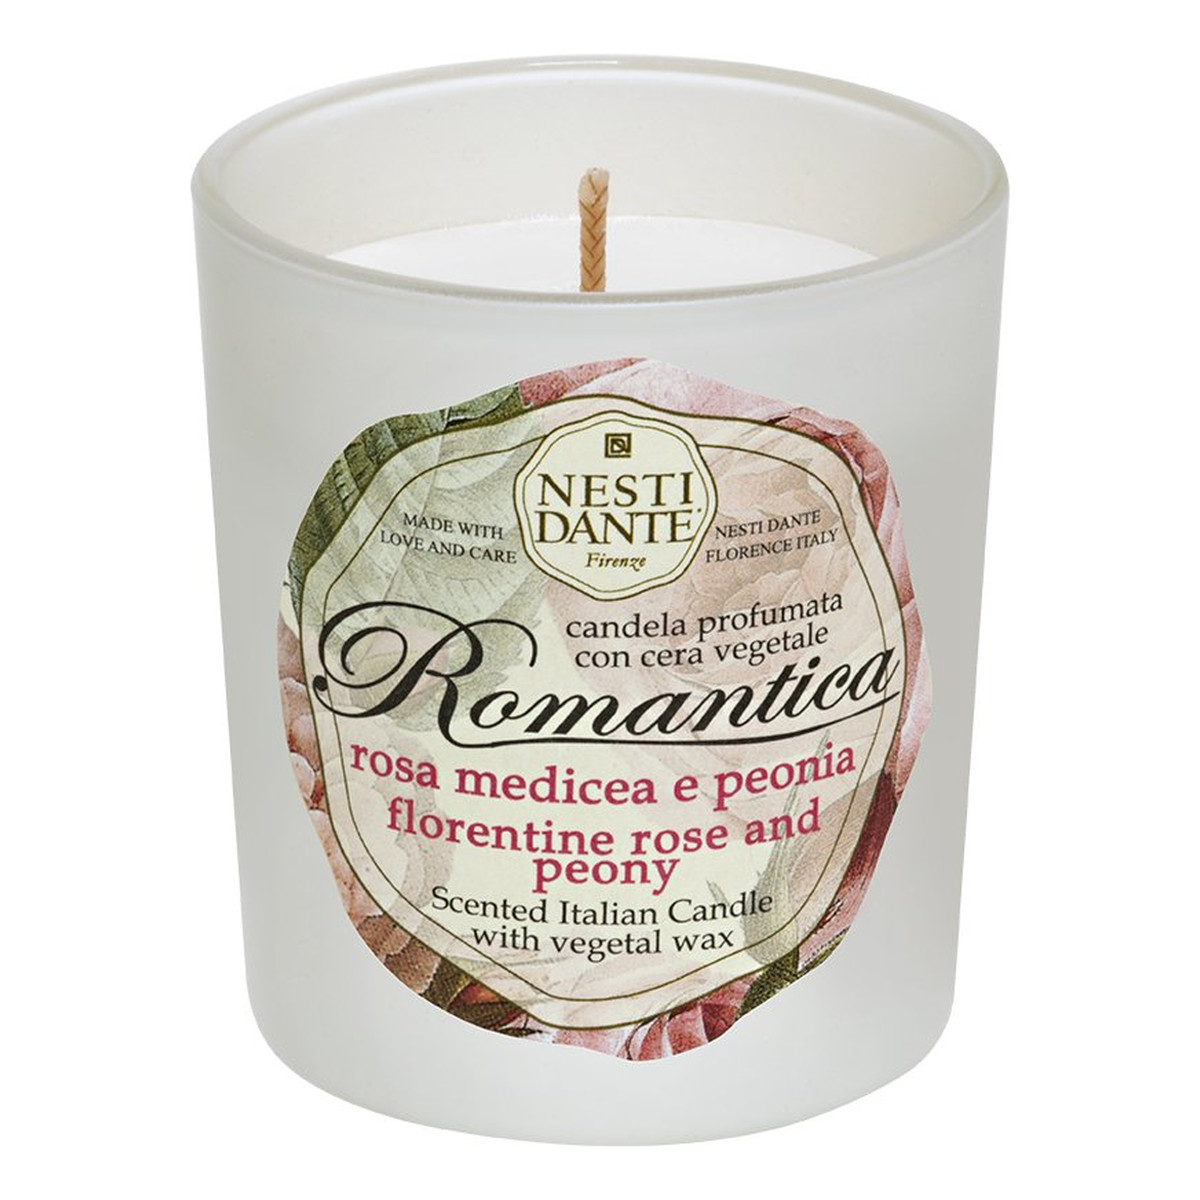 Nesti Dante Romantica candle świeca zapachowa róża & piwonia 160g